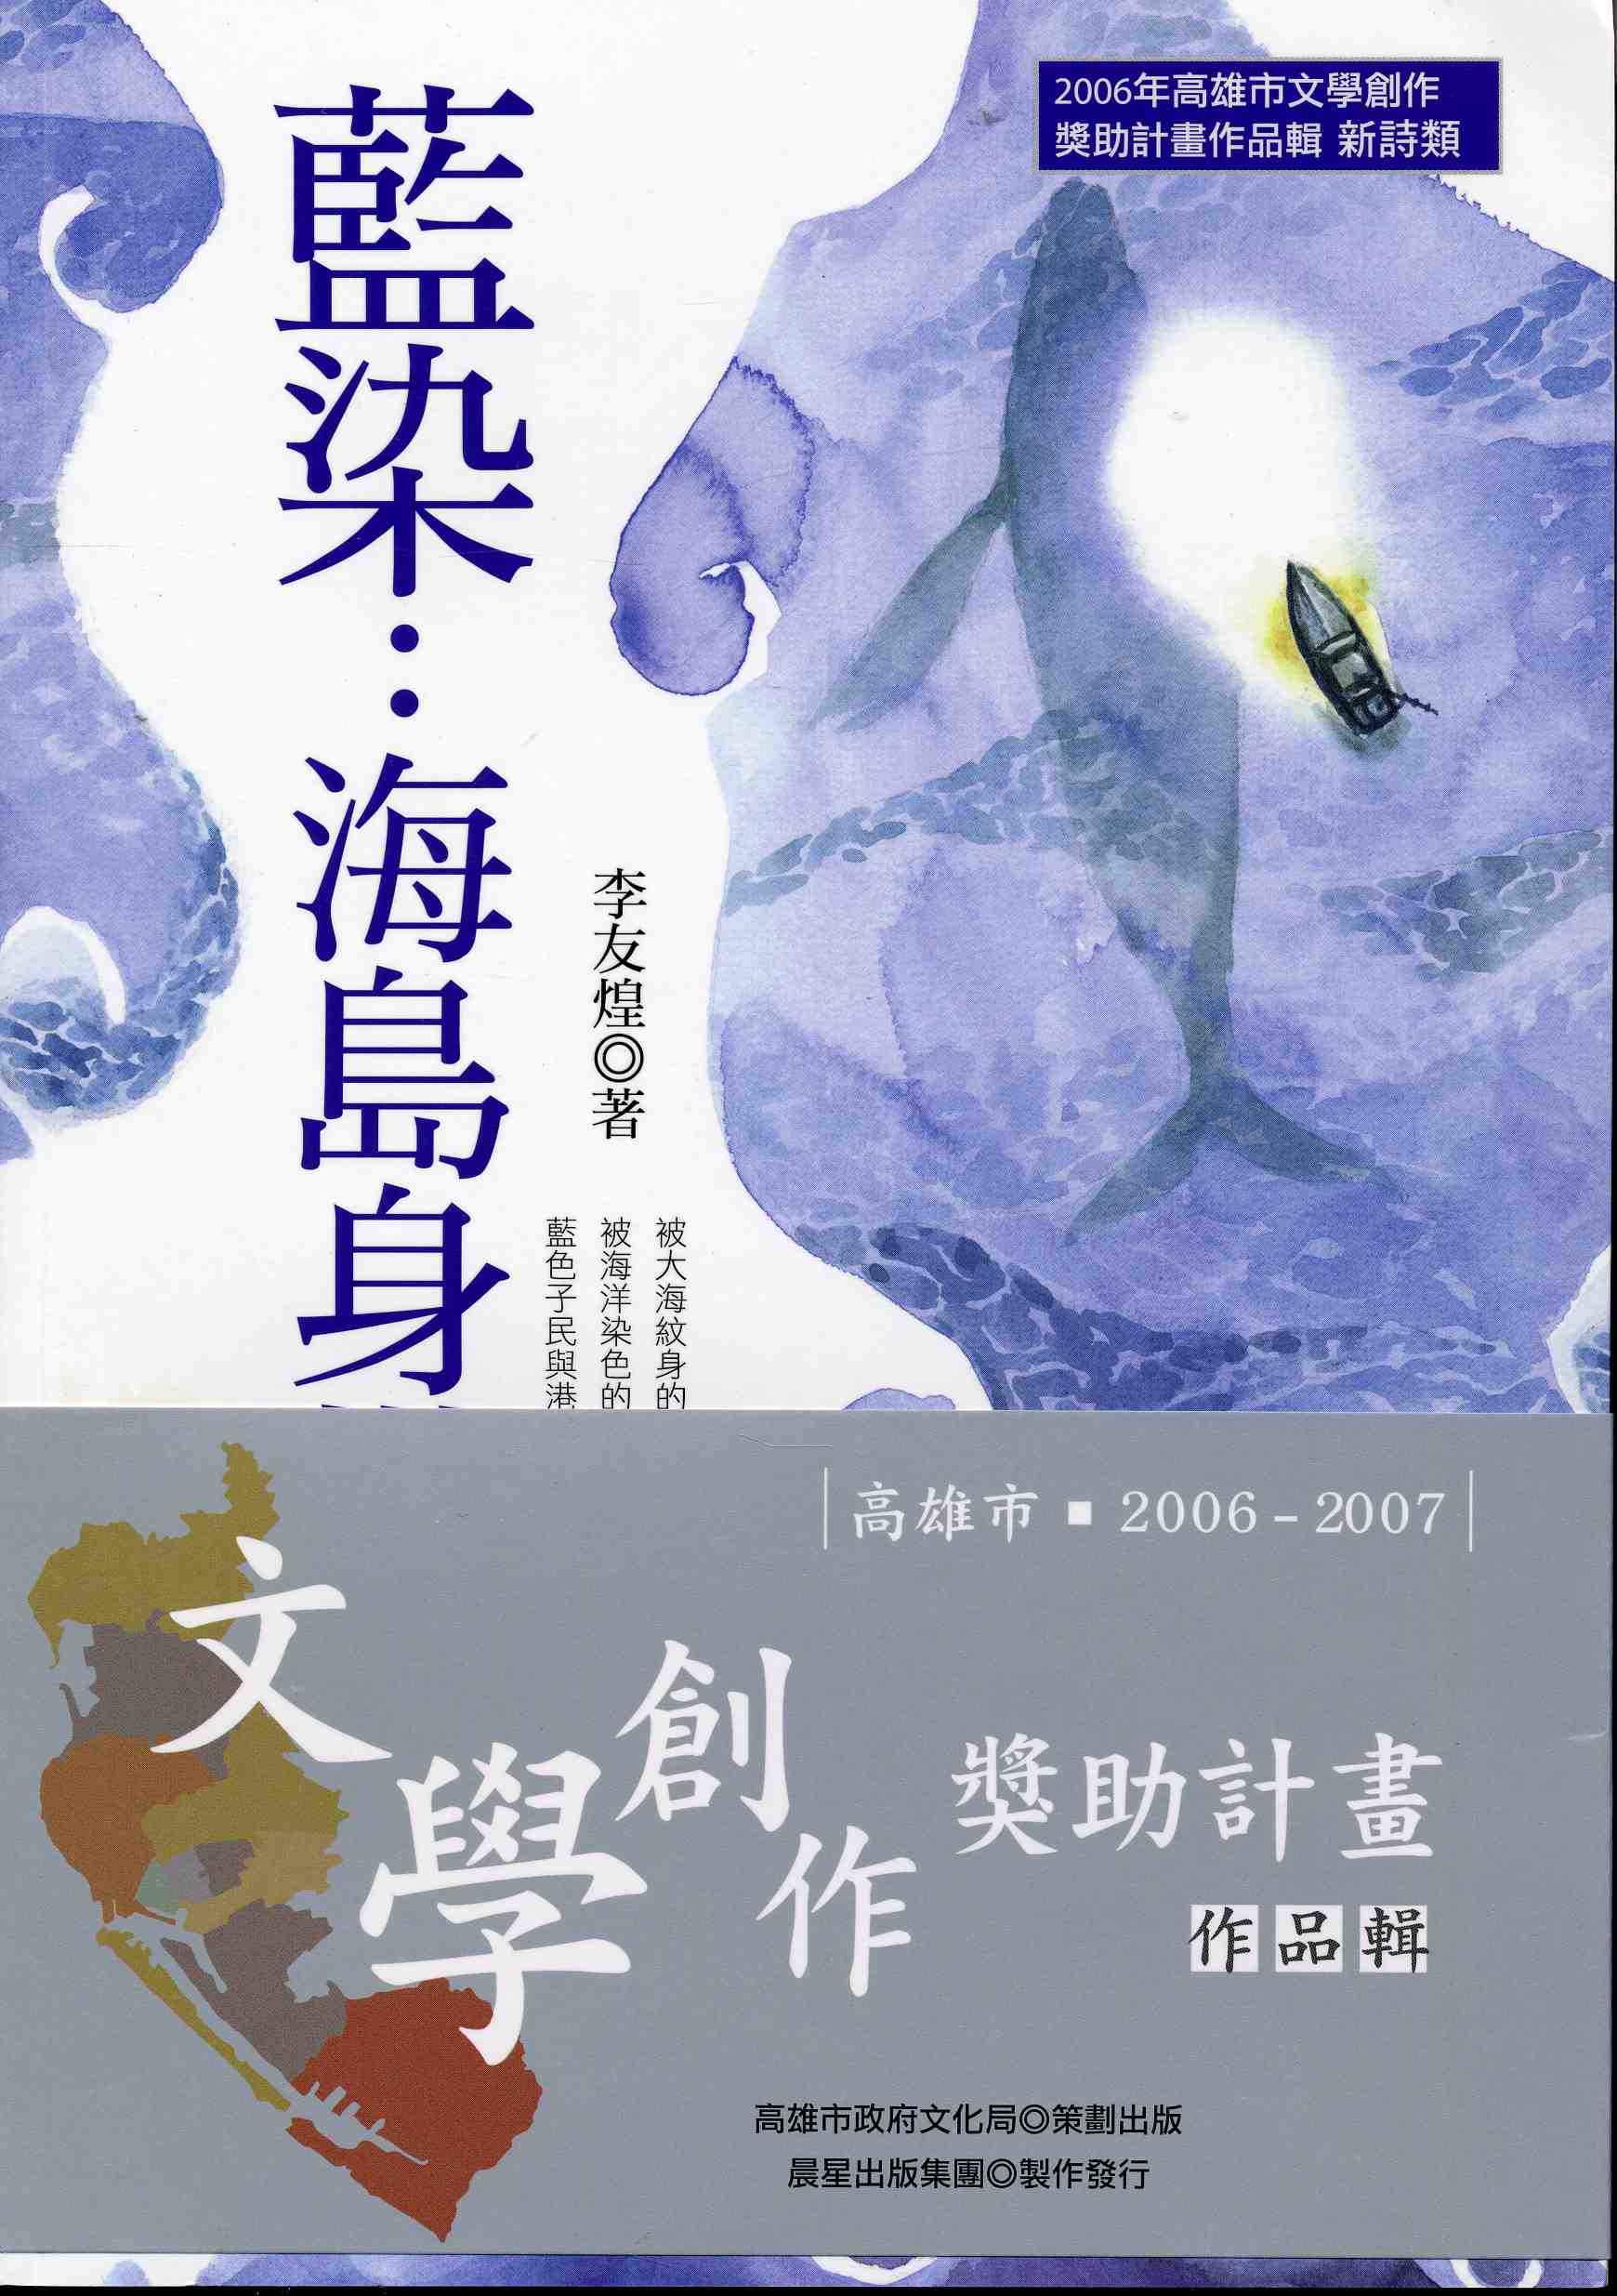 2006-7高雄文學創作獎助作品輯1-6(1)<藍染︰海島身世>李友煌(2006)新詩類